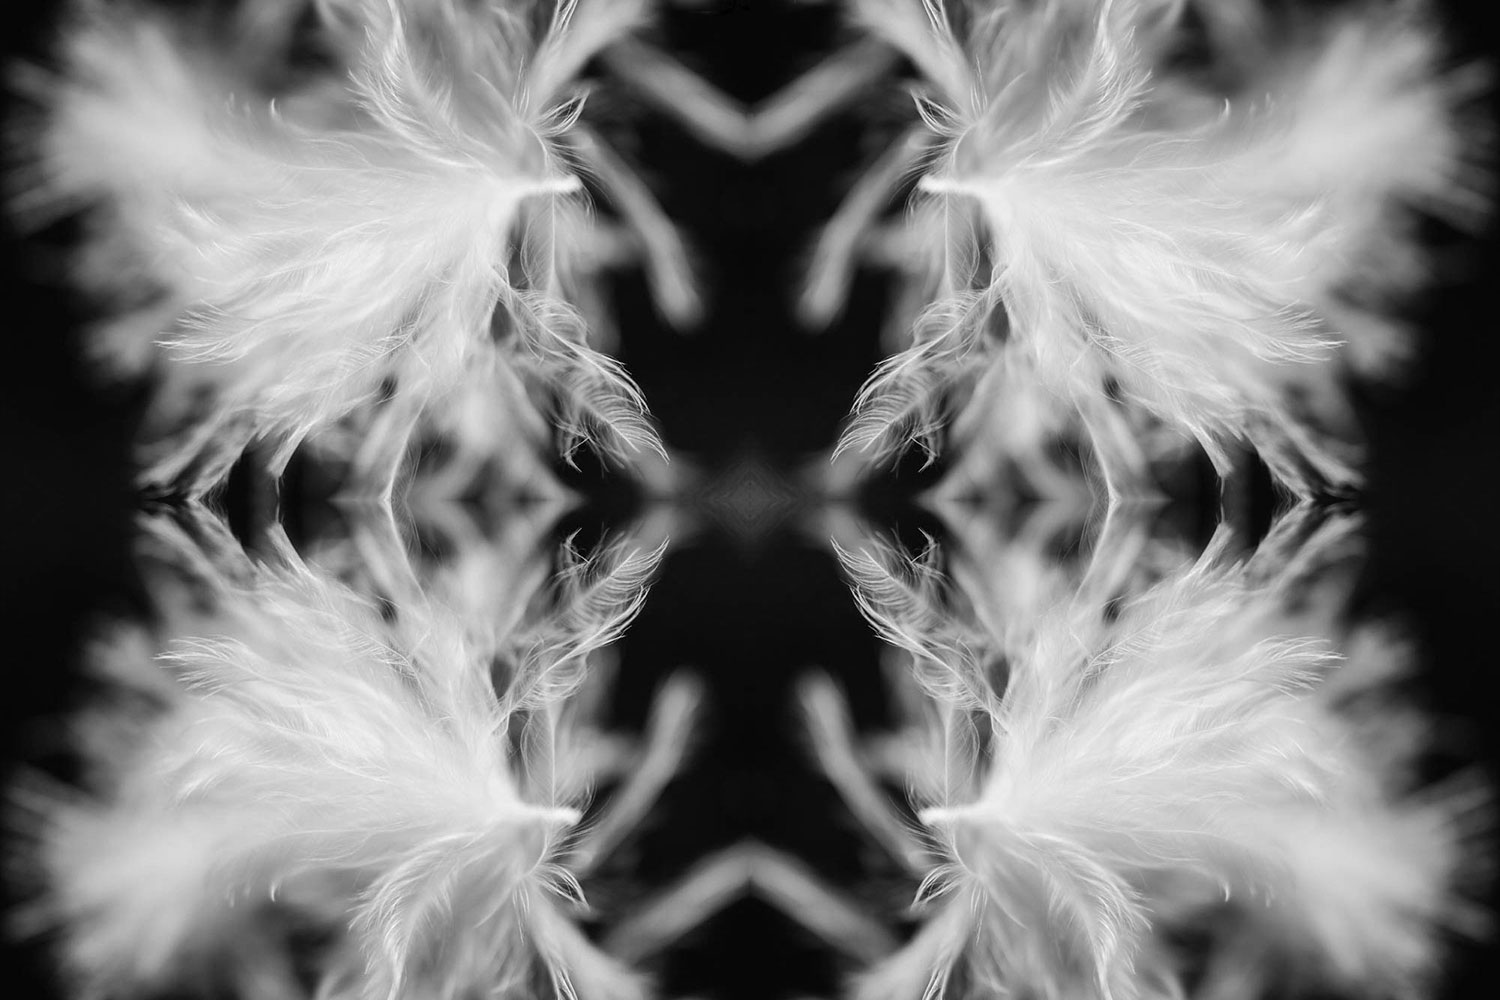 Baby bird white feather kaleidoscope photo.